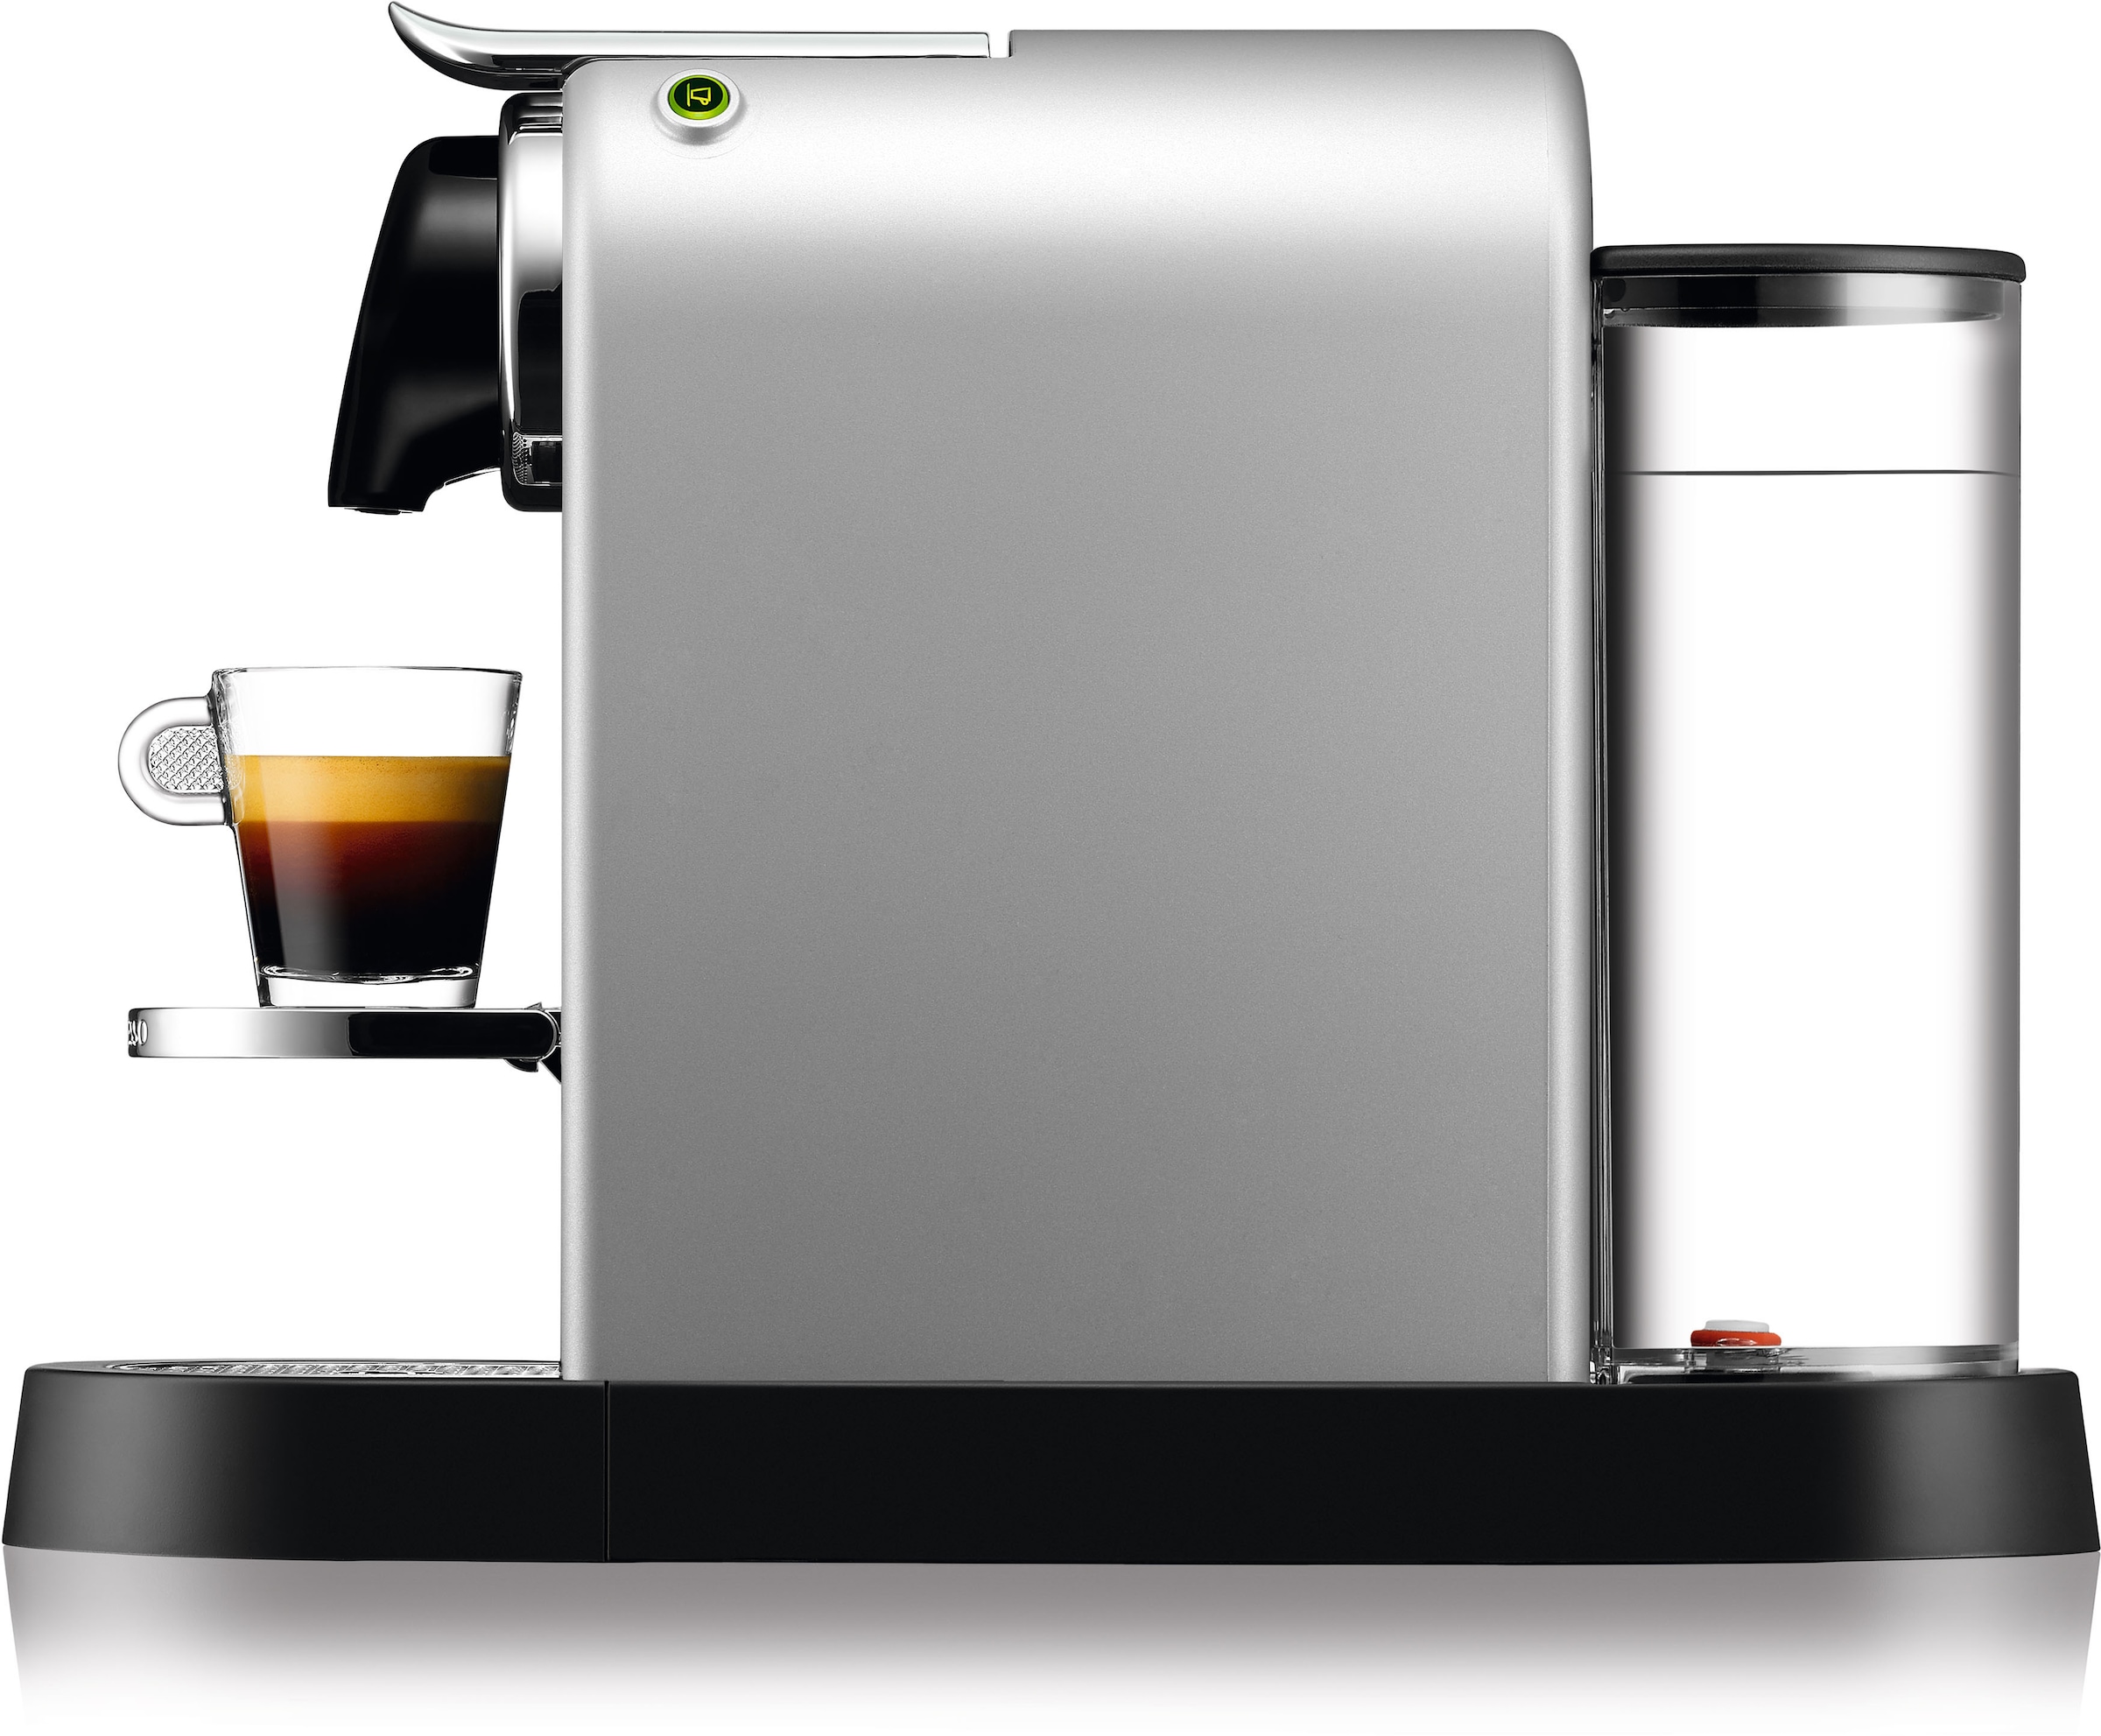 Nespresso Kapselmaschine »XN741B New CitiZ von Krups«, Wassertankkapazität:  1 Liter, inkl. Willkommenspaket mit 7 Kapseln jetzt kaufen bei OTTO